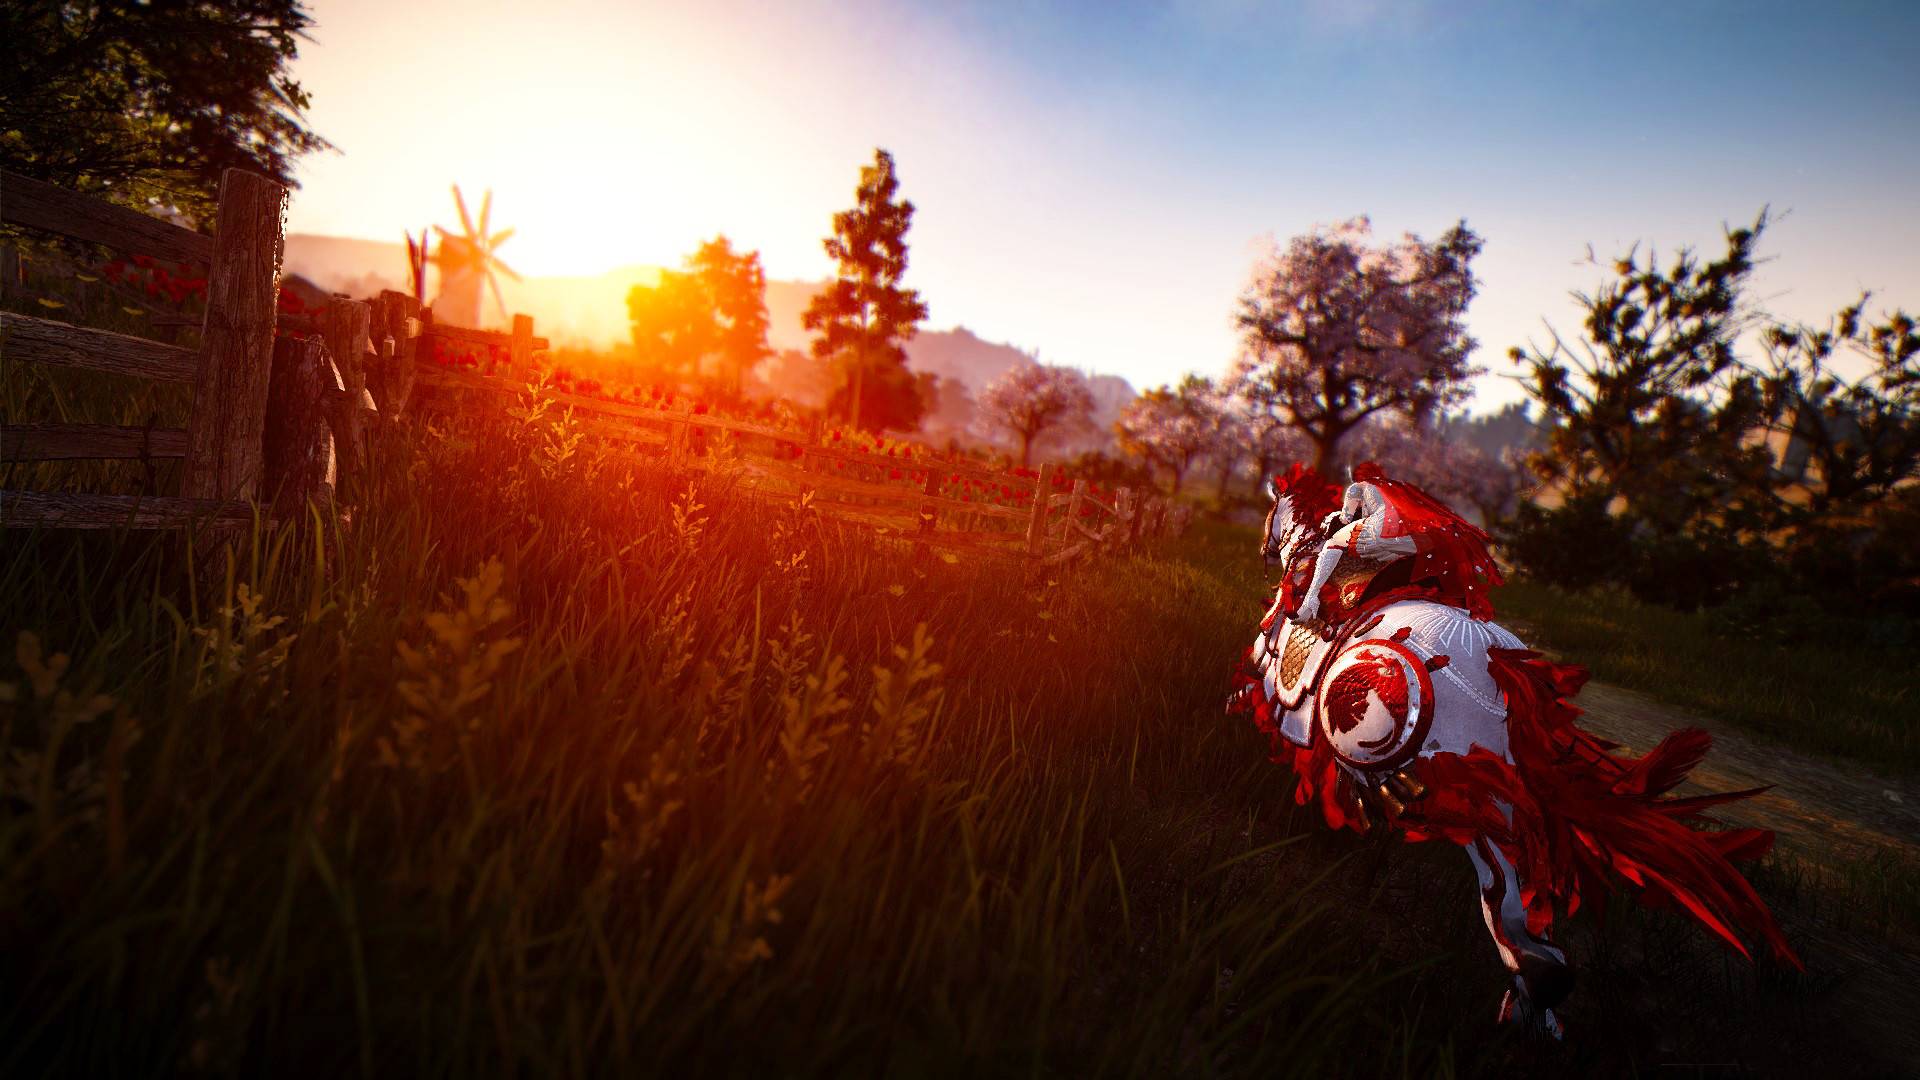 Bästa MMORPG -spel: Black Desert Online. Bilden visar en man som rider på en häst mot en solnedgång